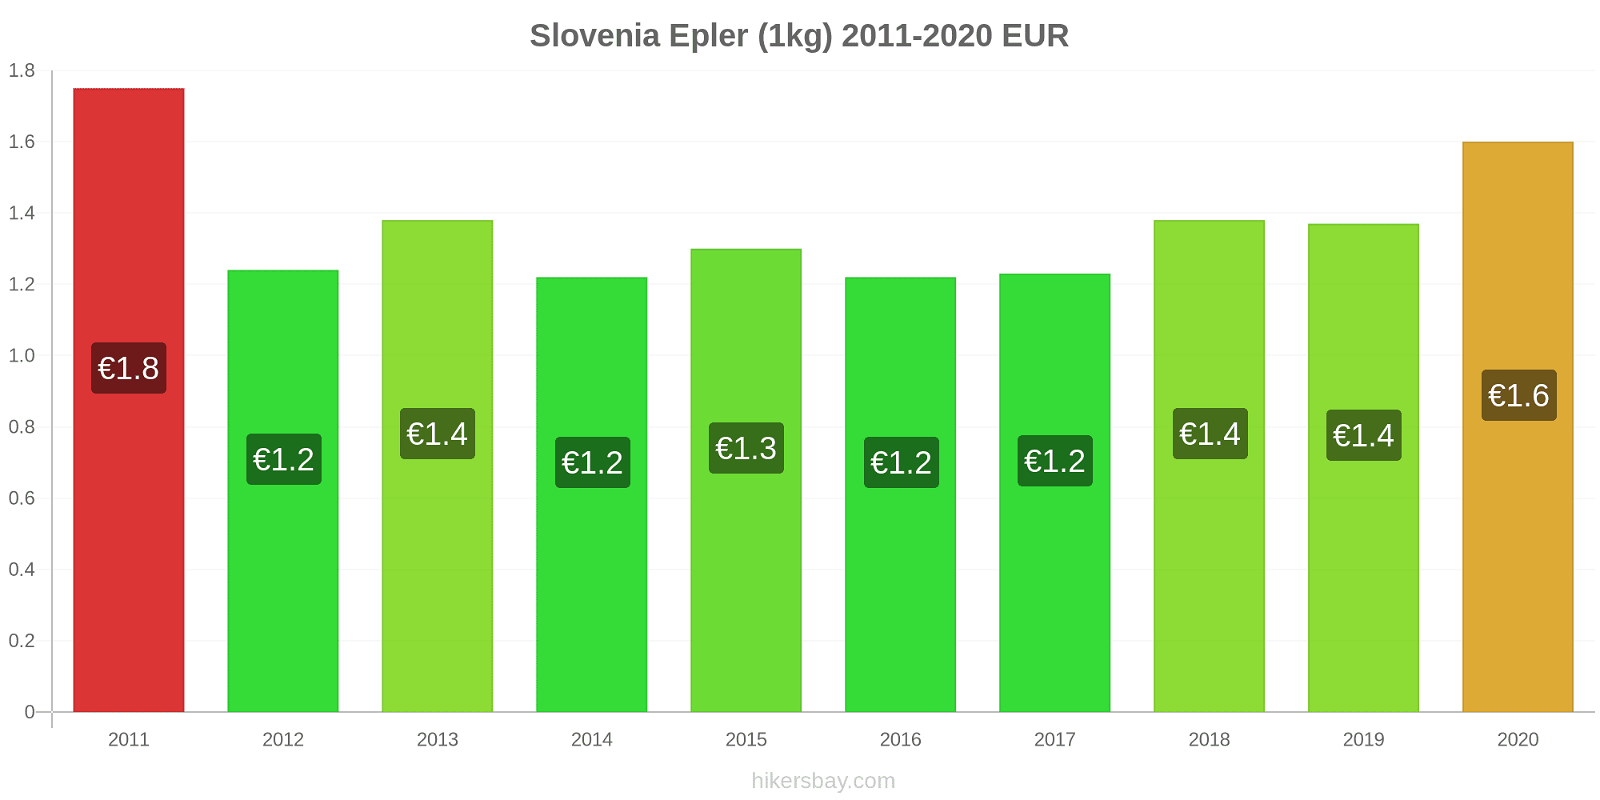 Slovenia prisendringer Epler (1kg) hikersbay.com